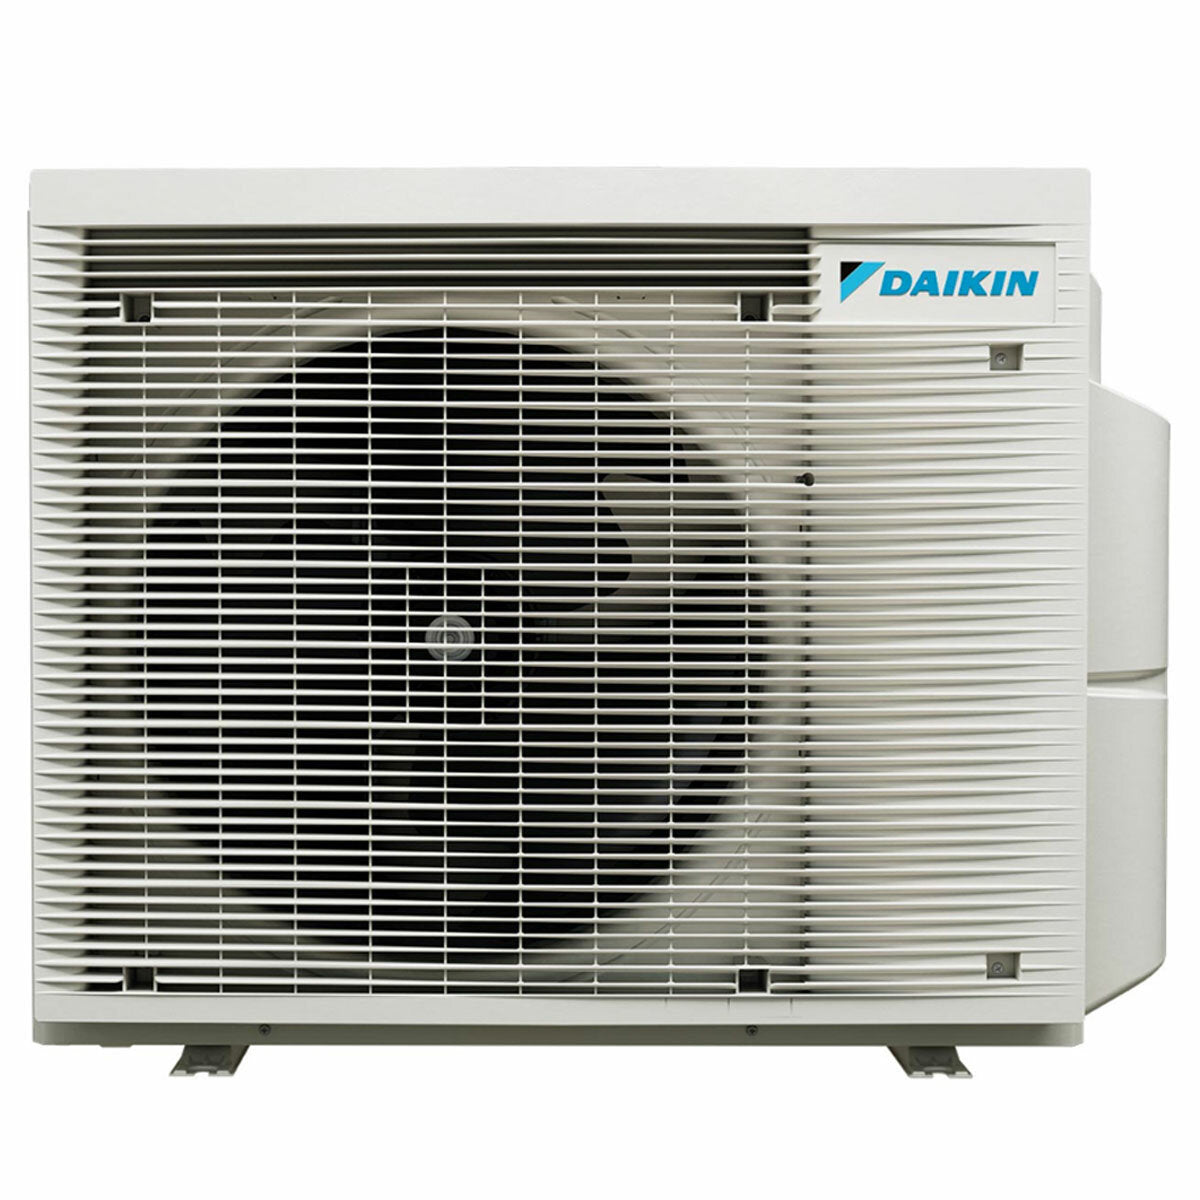 Daikin Emura 3 trial split air conditioner 7000+9000+15000 BTU inverter A++ wifi outdoor unit 5 kW White